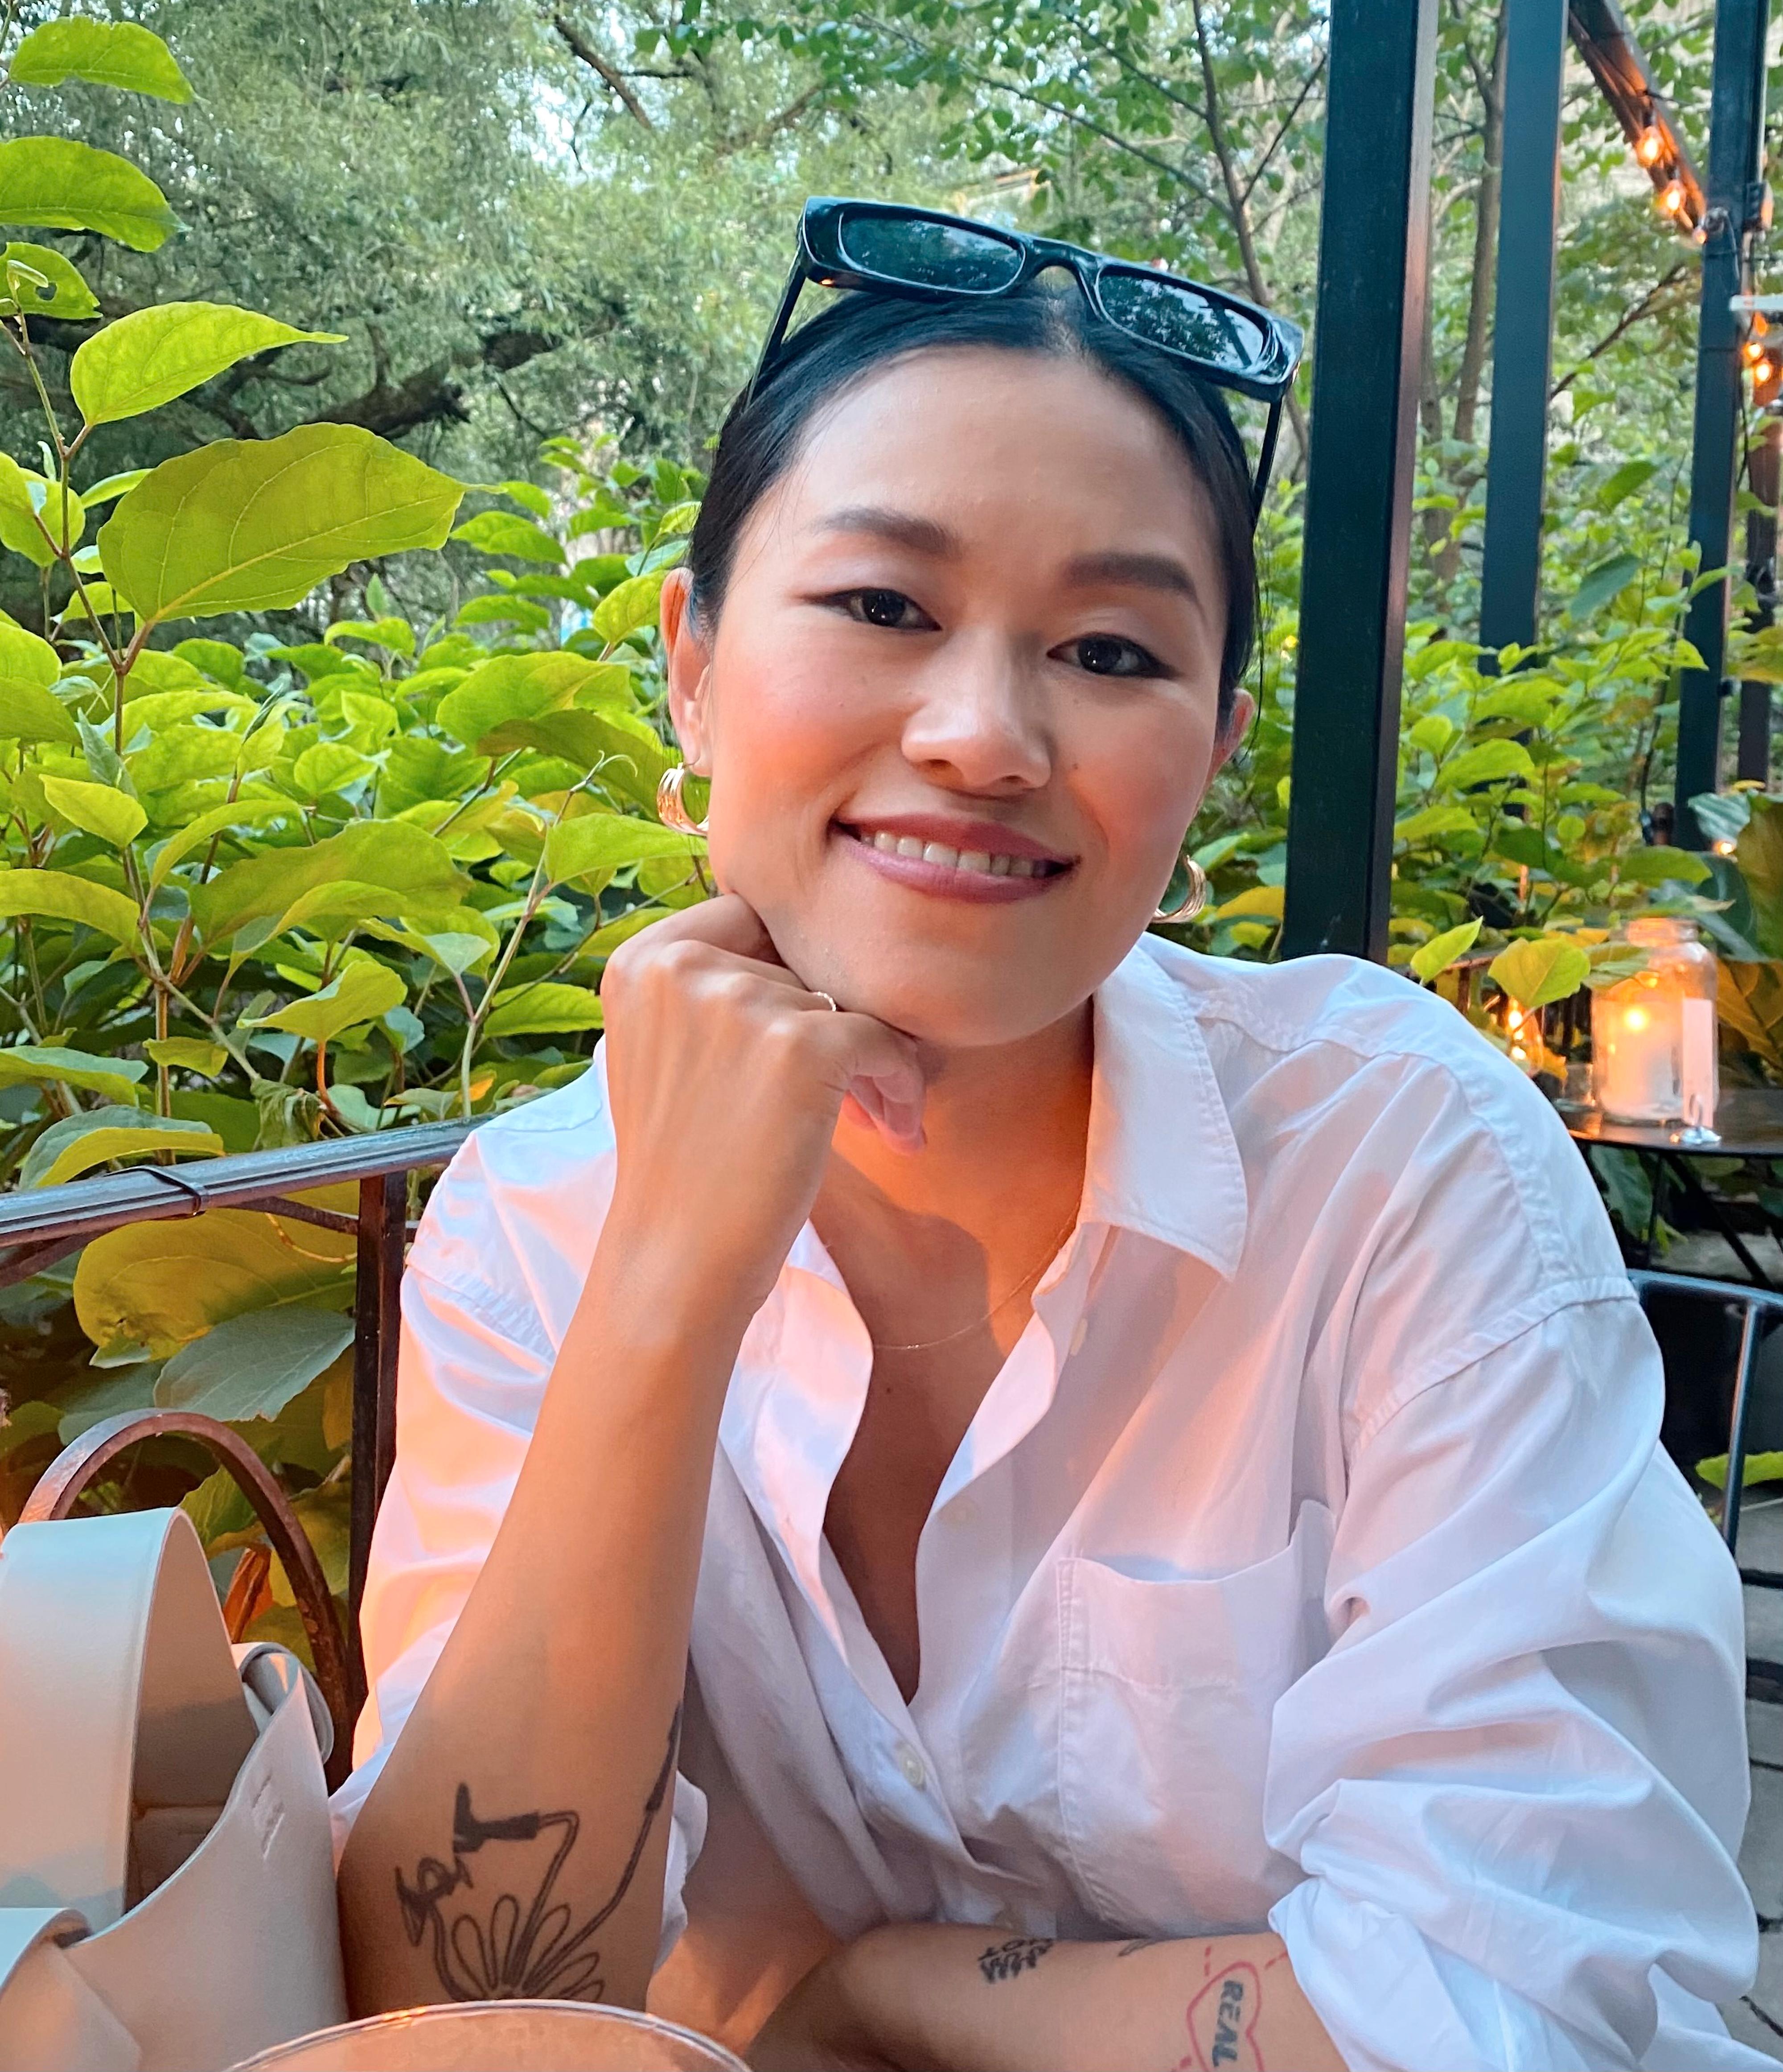 MAT-MINNER: Michelle Zhao har blogget om mat i flere år, nå har hun også åpnet restaurant basert på sine røtter.